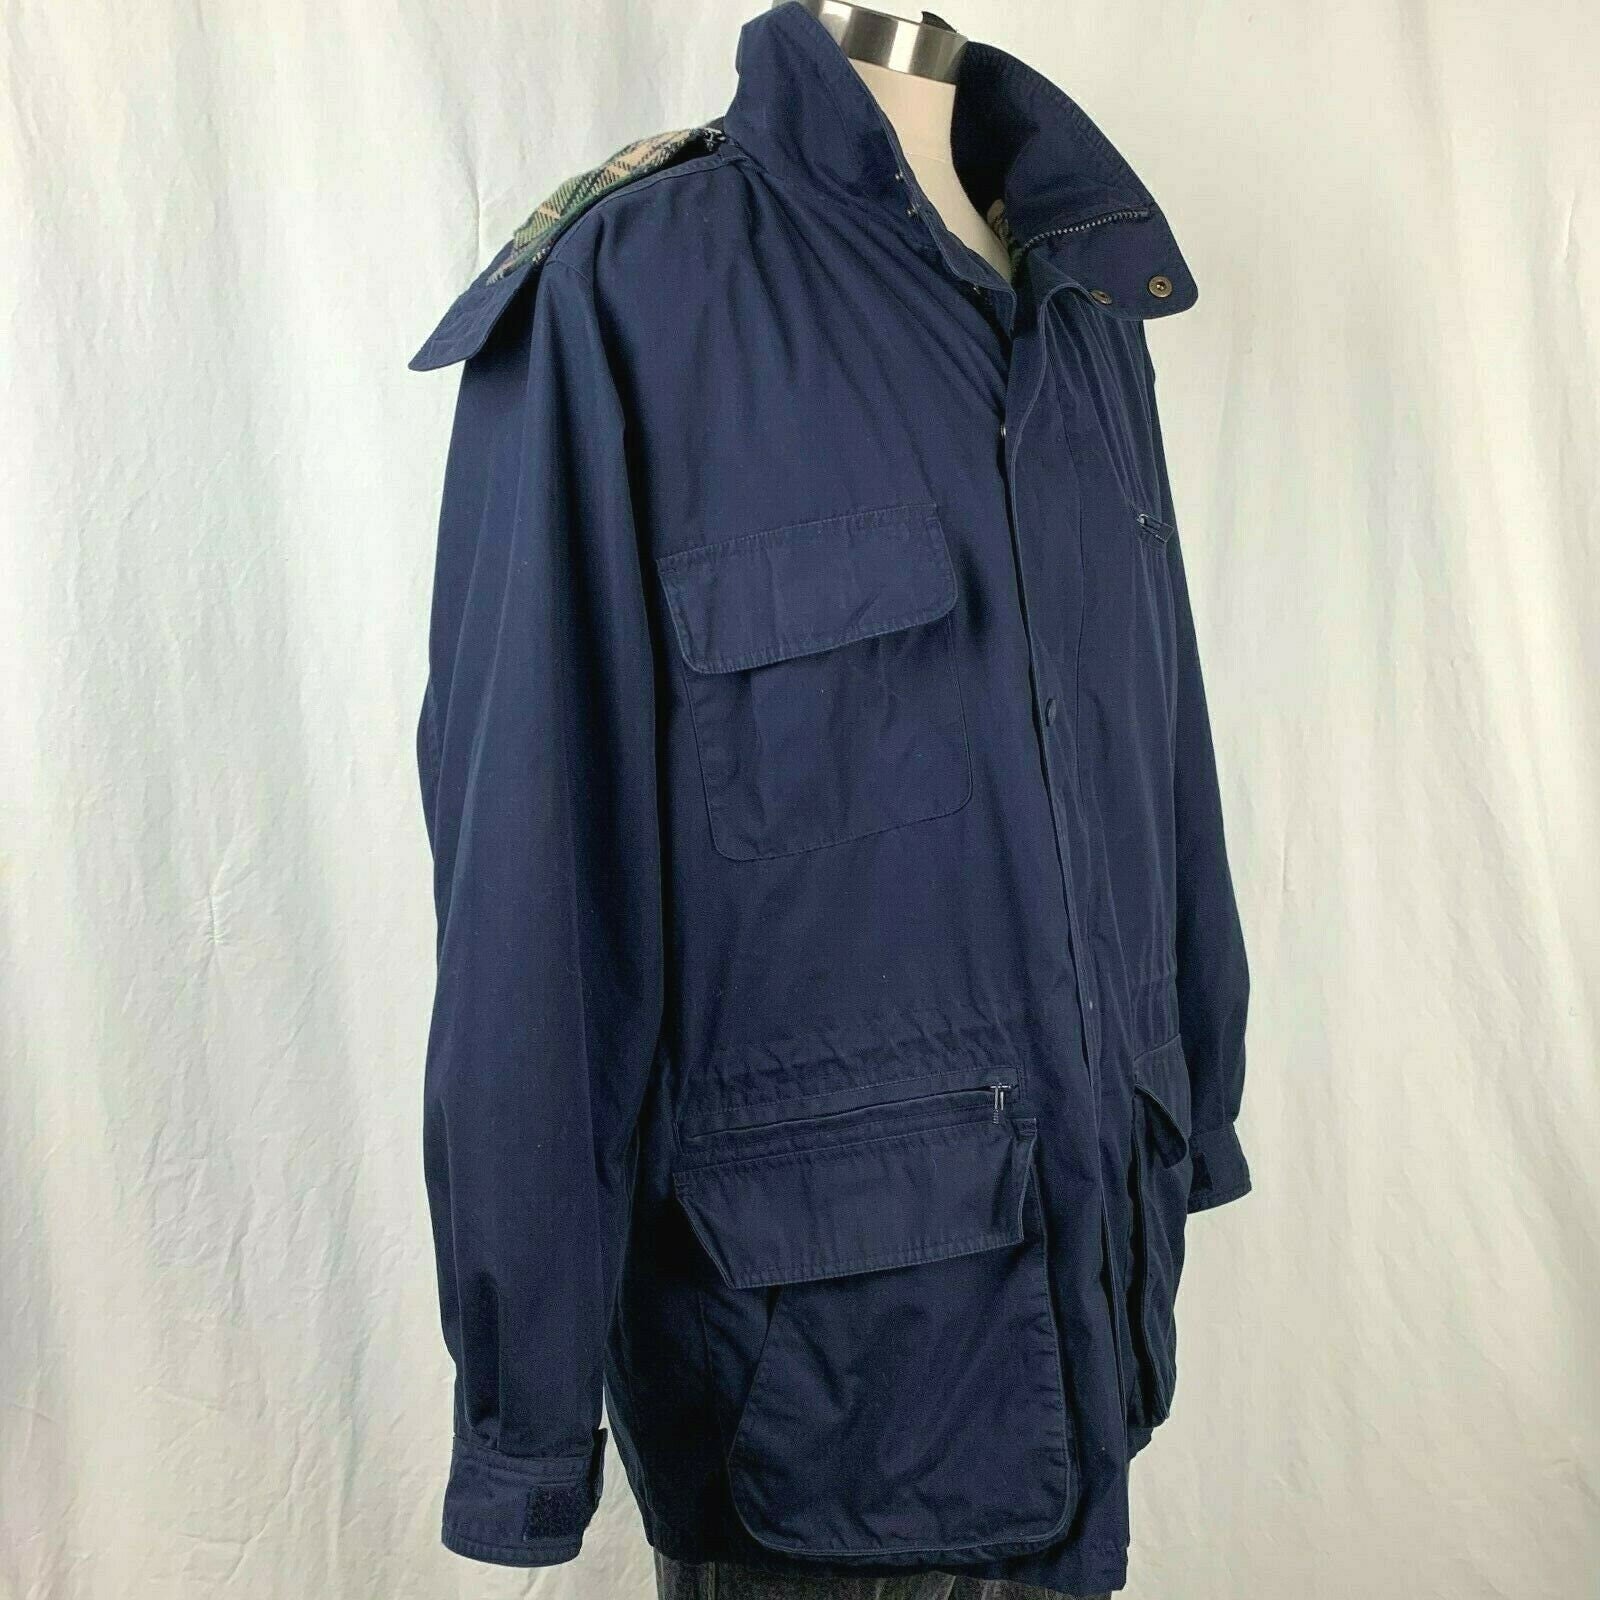 90s/00s Vintage Eddie Bauer Jacket L Navy Blue Plaid Wool Lined